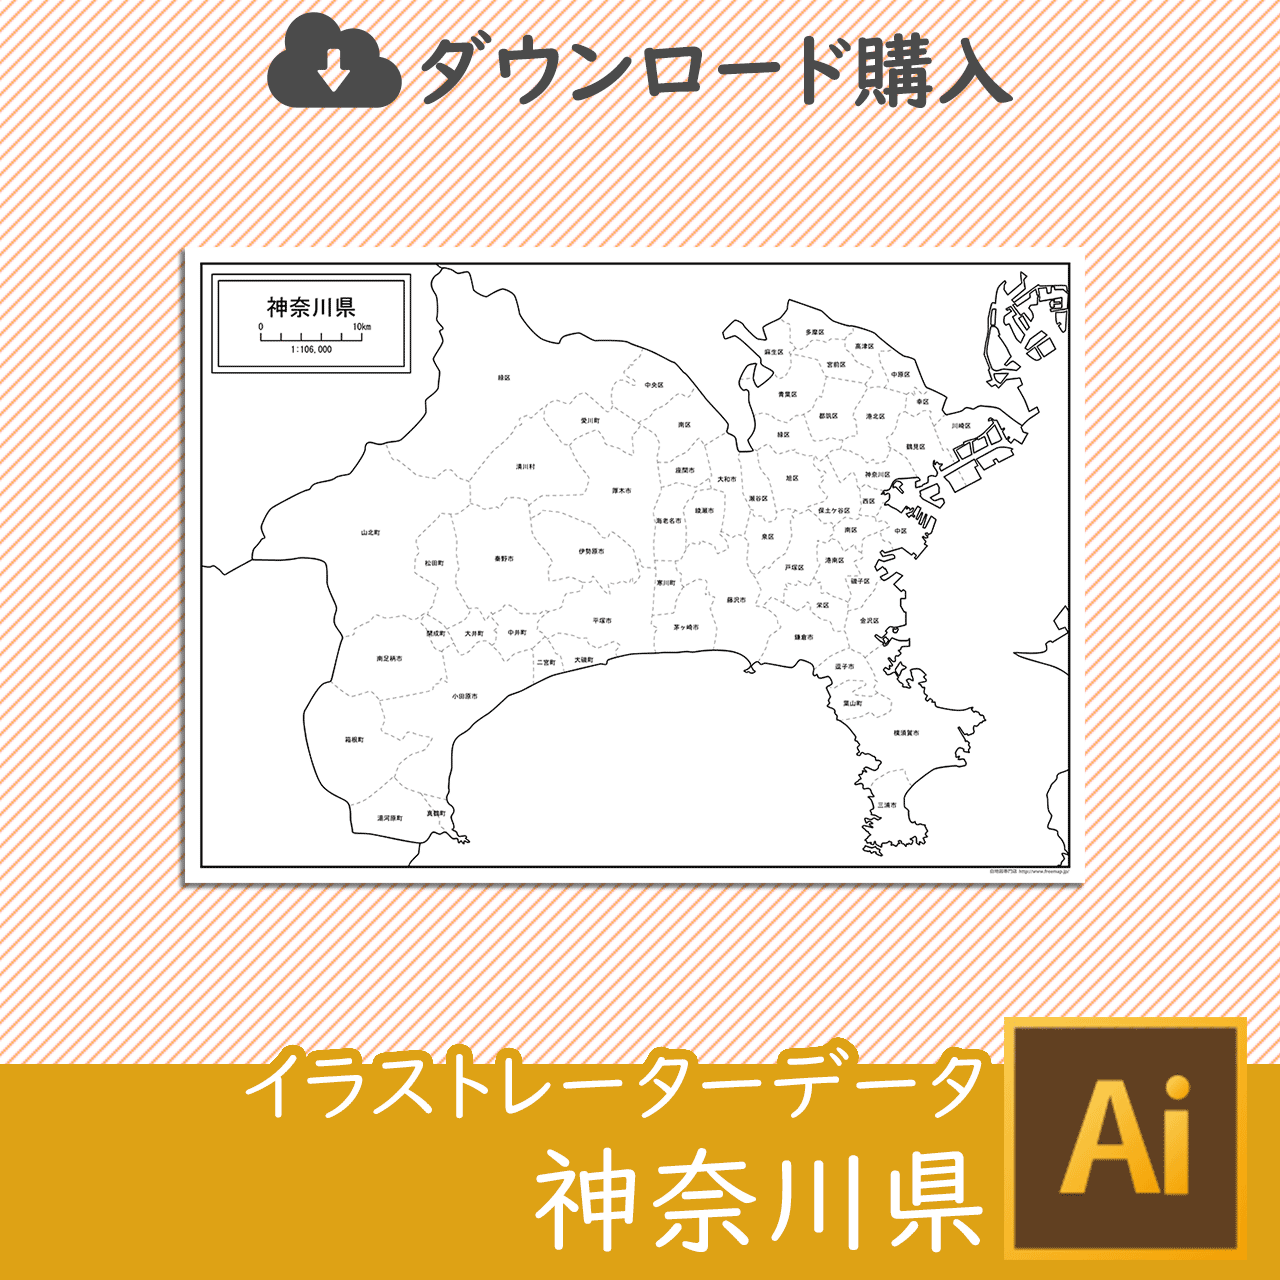 神奈川県の白地図のサムネイル